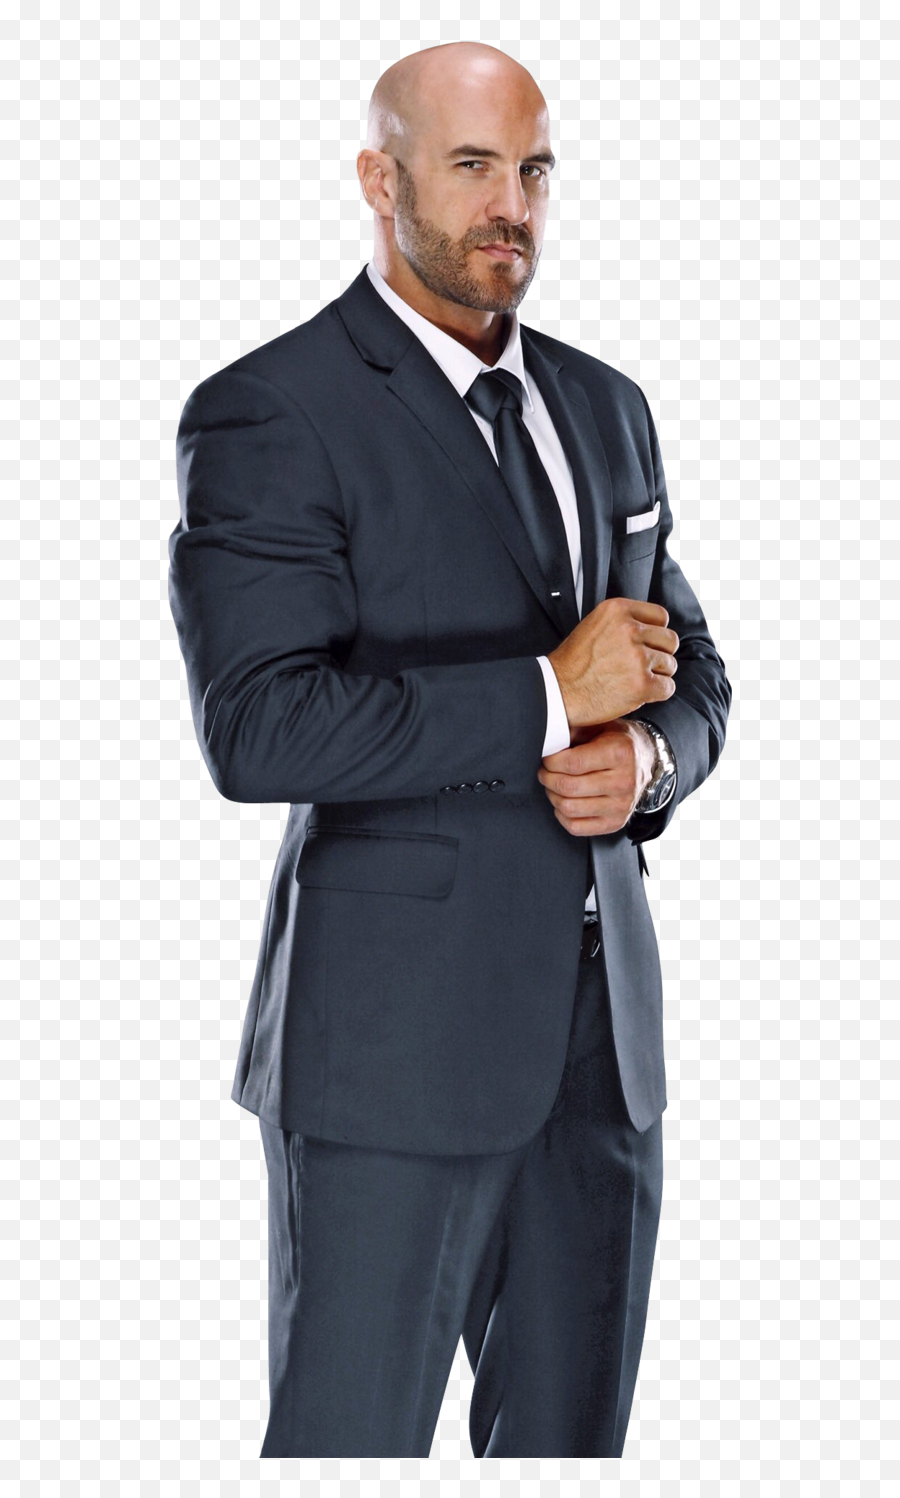 Men Business Suit Png Transparent Background Free Emoji,Suit Transparent Background